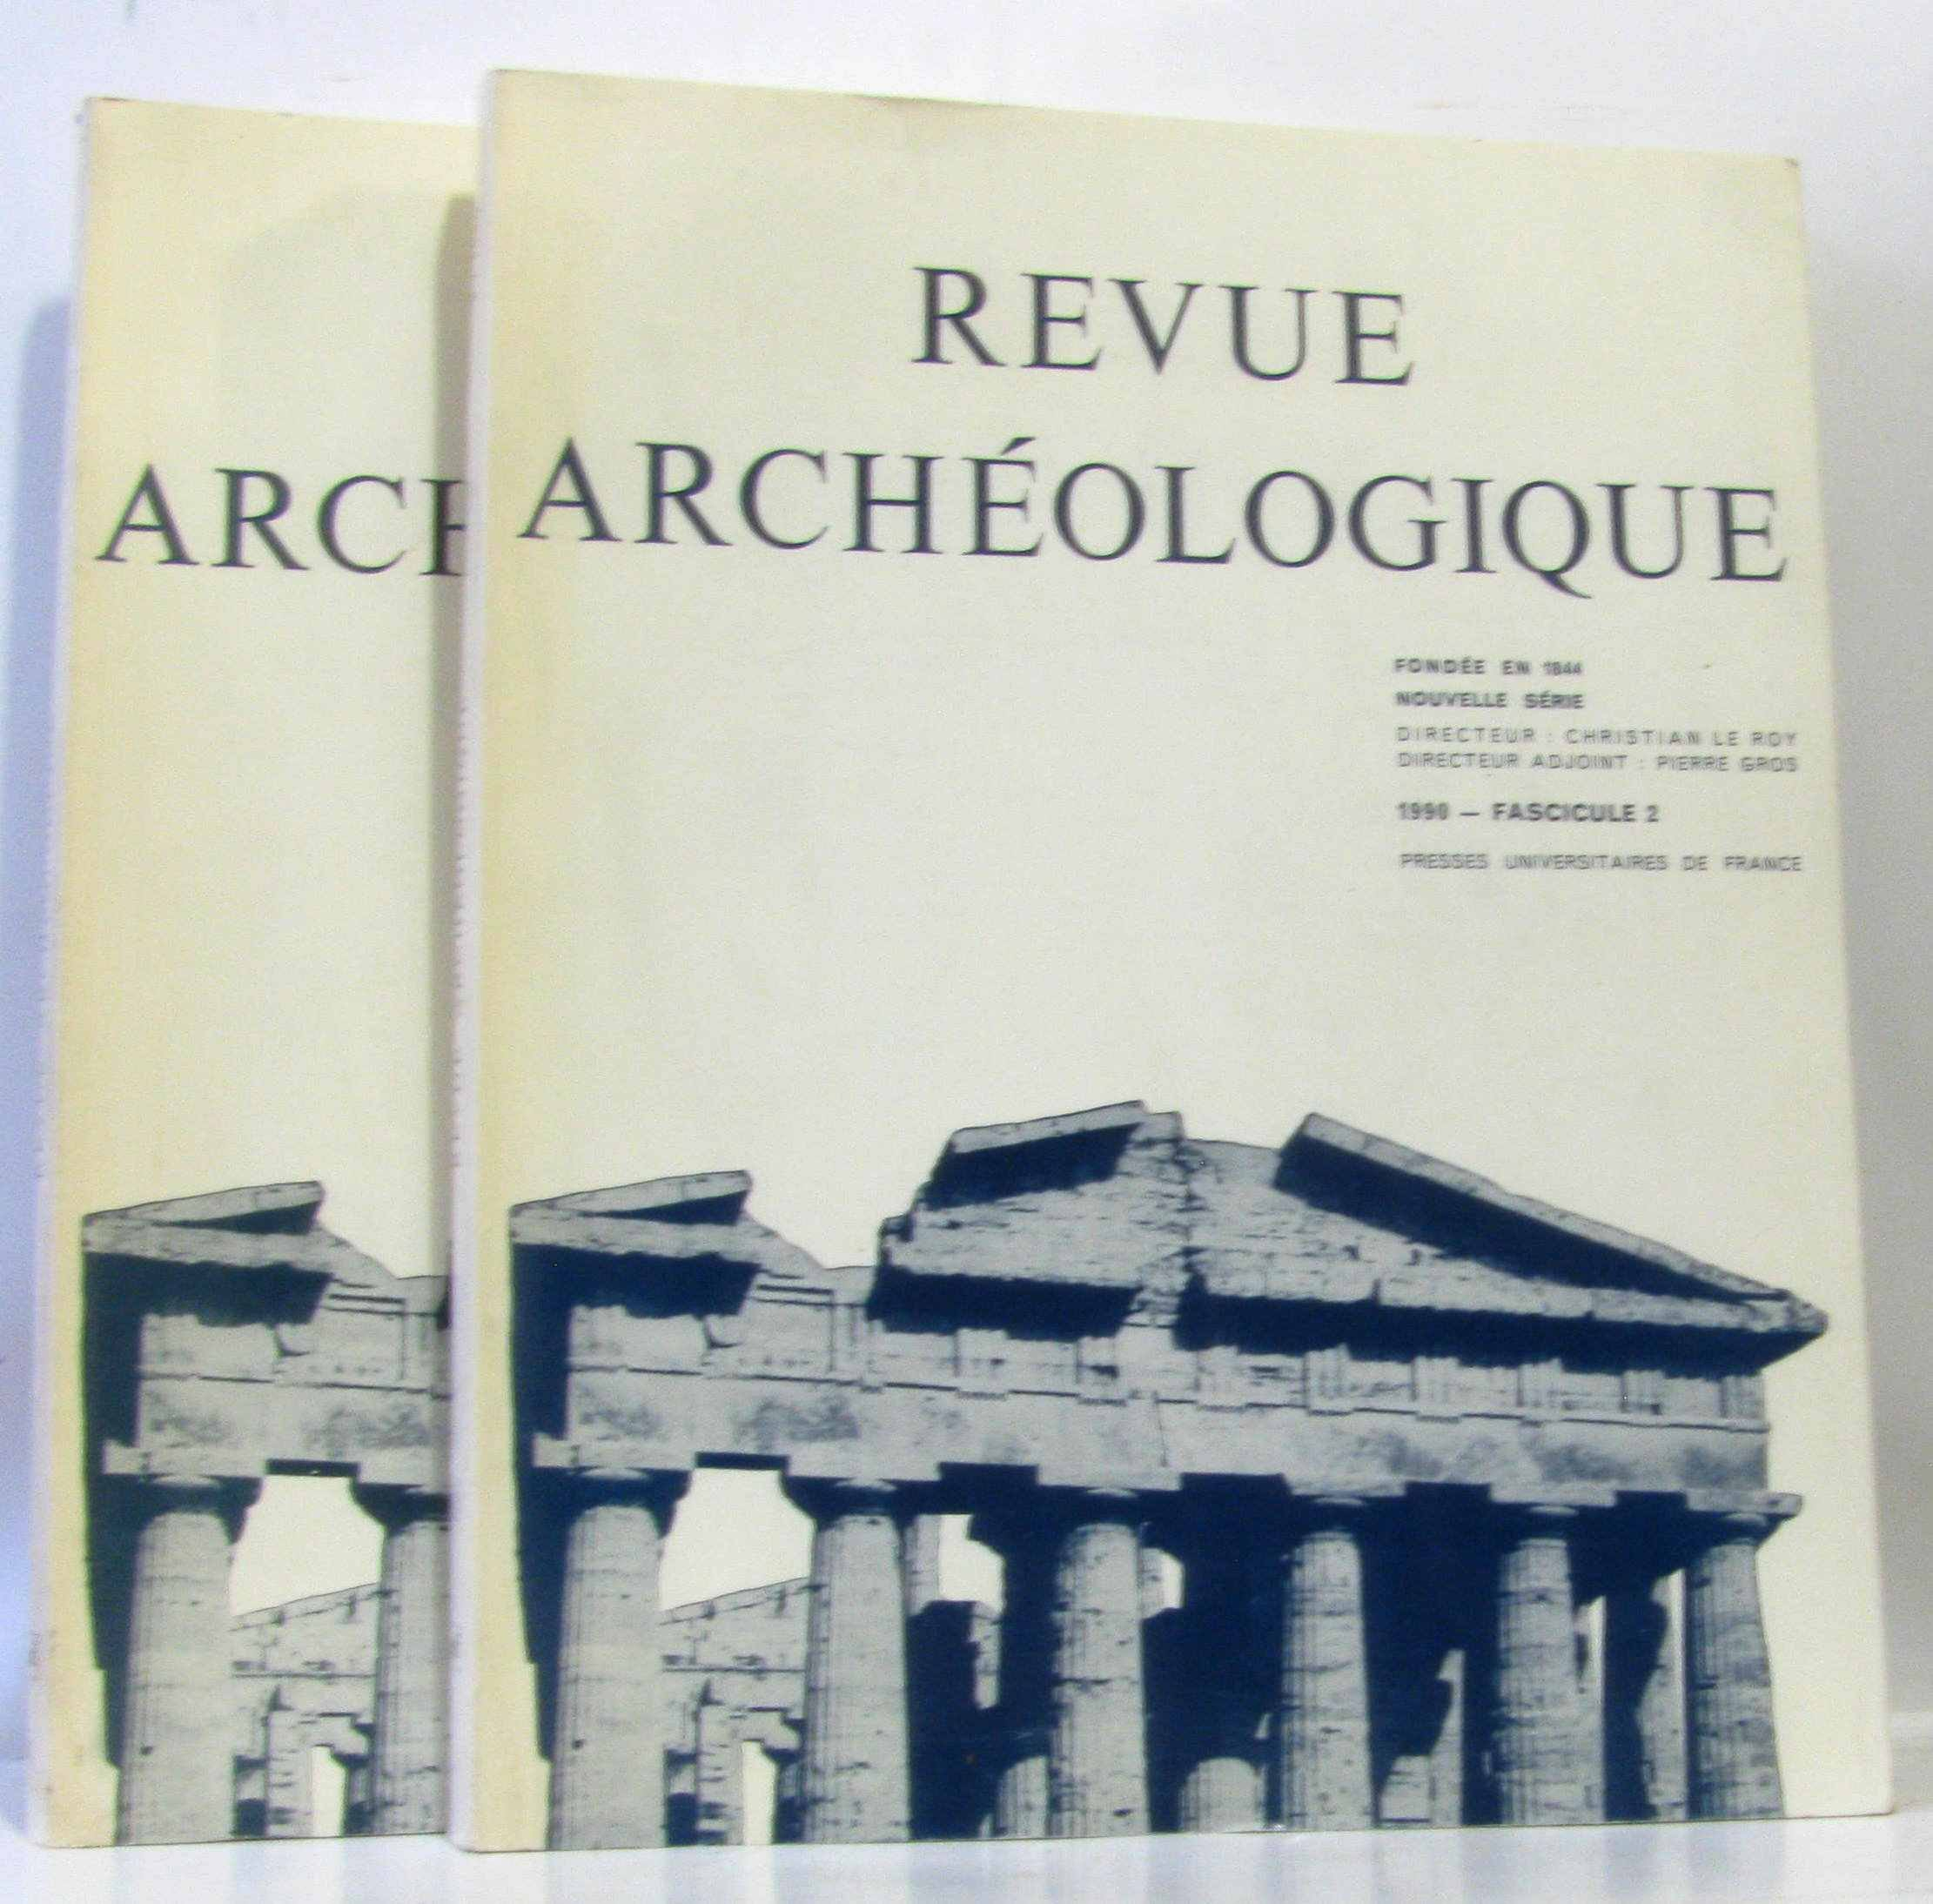 Revue archéologique, 1993, numéro 1